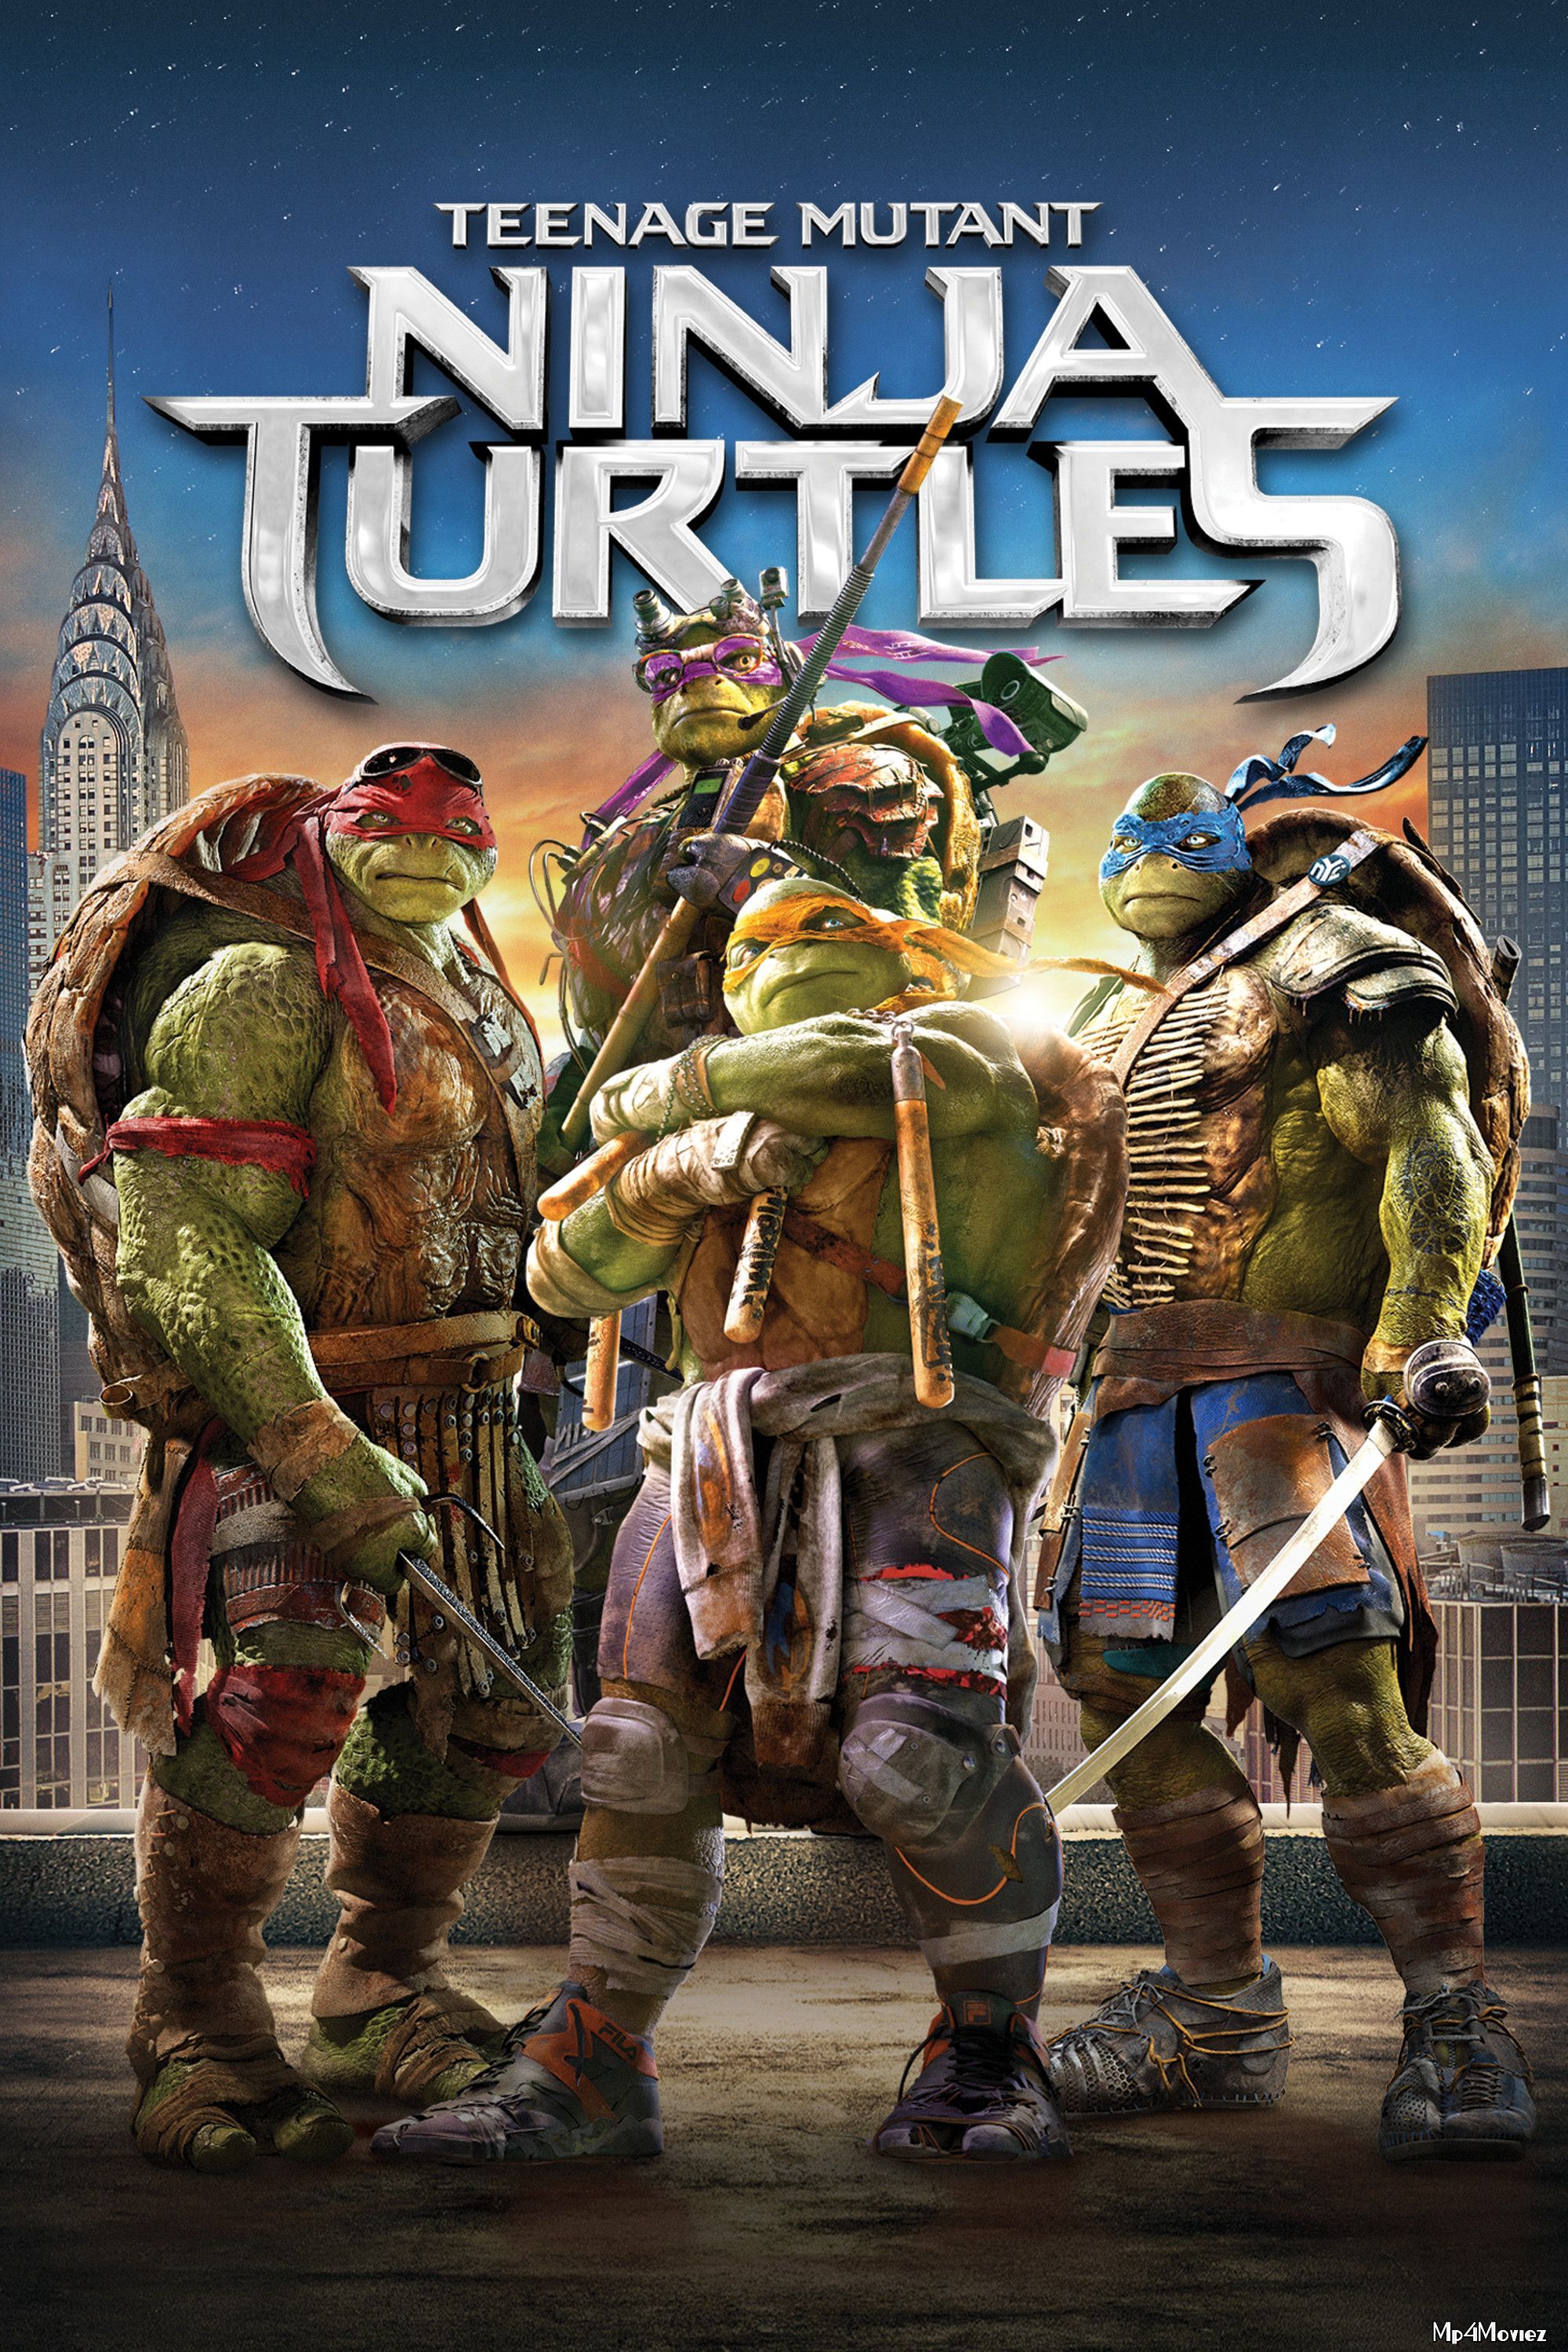 Teenage Mutant Ninja Turtles 2014 Hindi Dubbed Full Movie download full movie